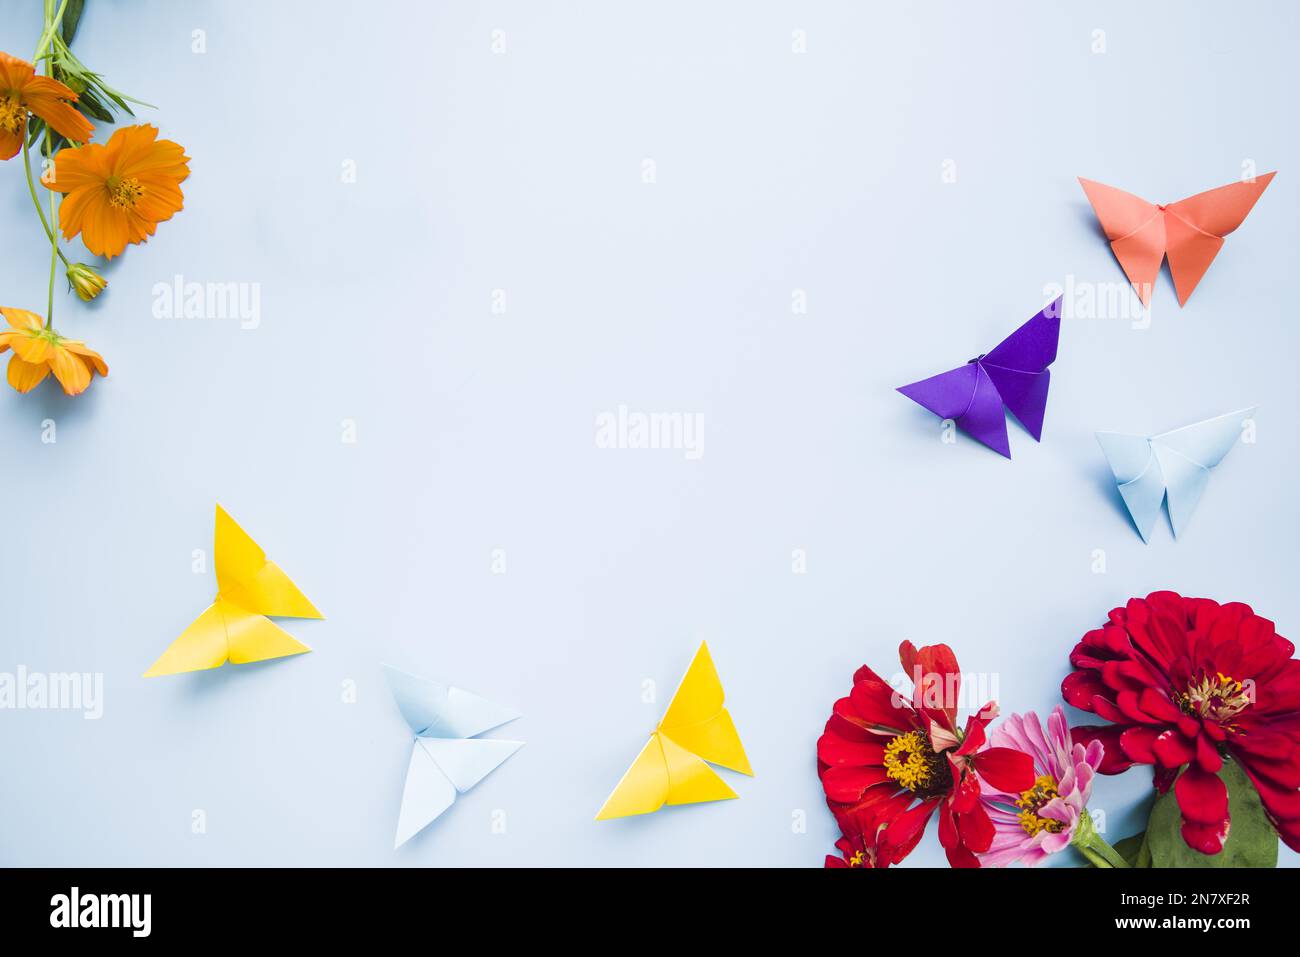 Dekoration mit Calendula-Blüten, Marigold-Blüten, Origami-Papier, Schmetterlinge, blauer Hintergrund Stockfoto